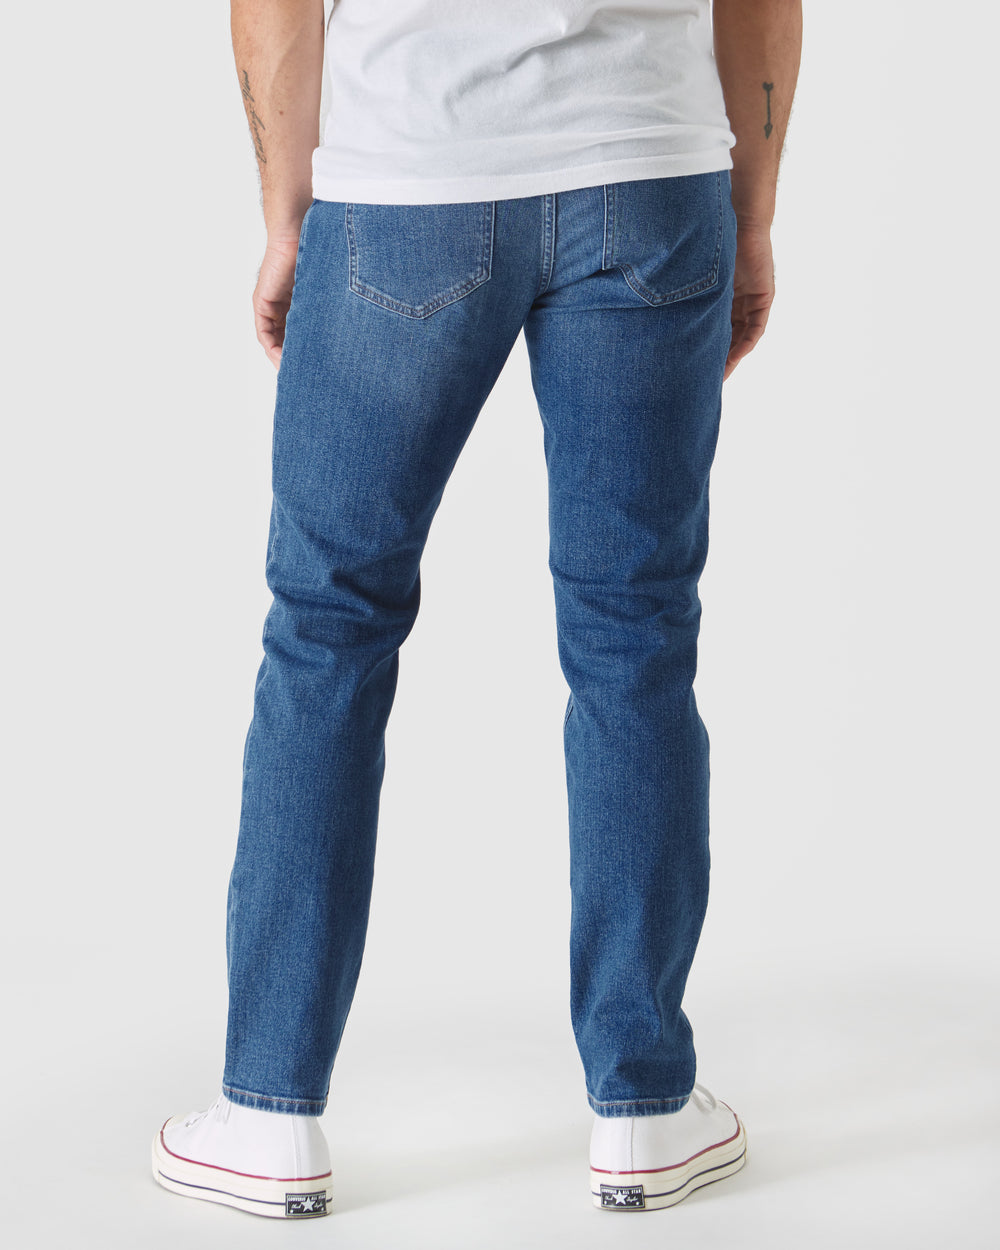 Medium Indigo Wash Slim Authentic Stretch Jeans